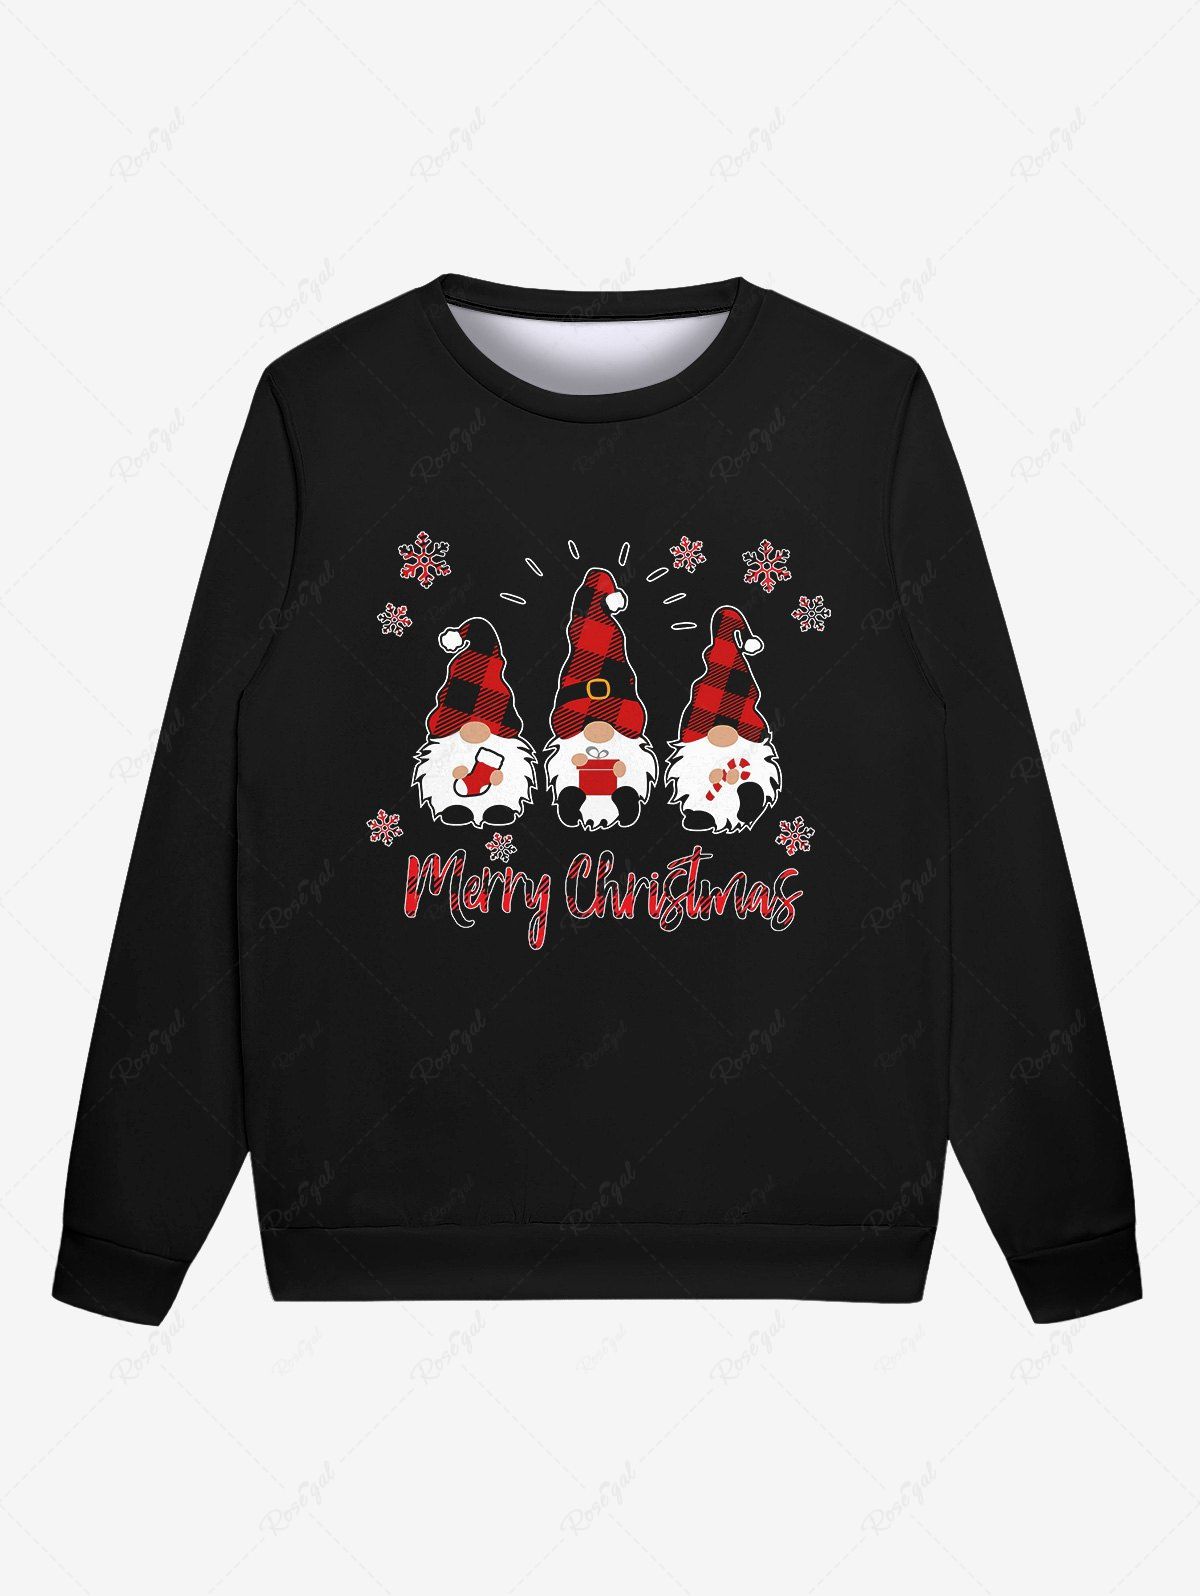 Fashion Gothic Christmas Plaid Hat Santa Clause Snowflake Letters Print Sweatshirt For Men  